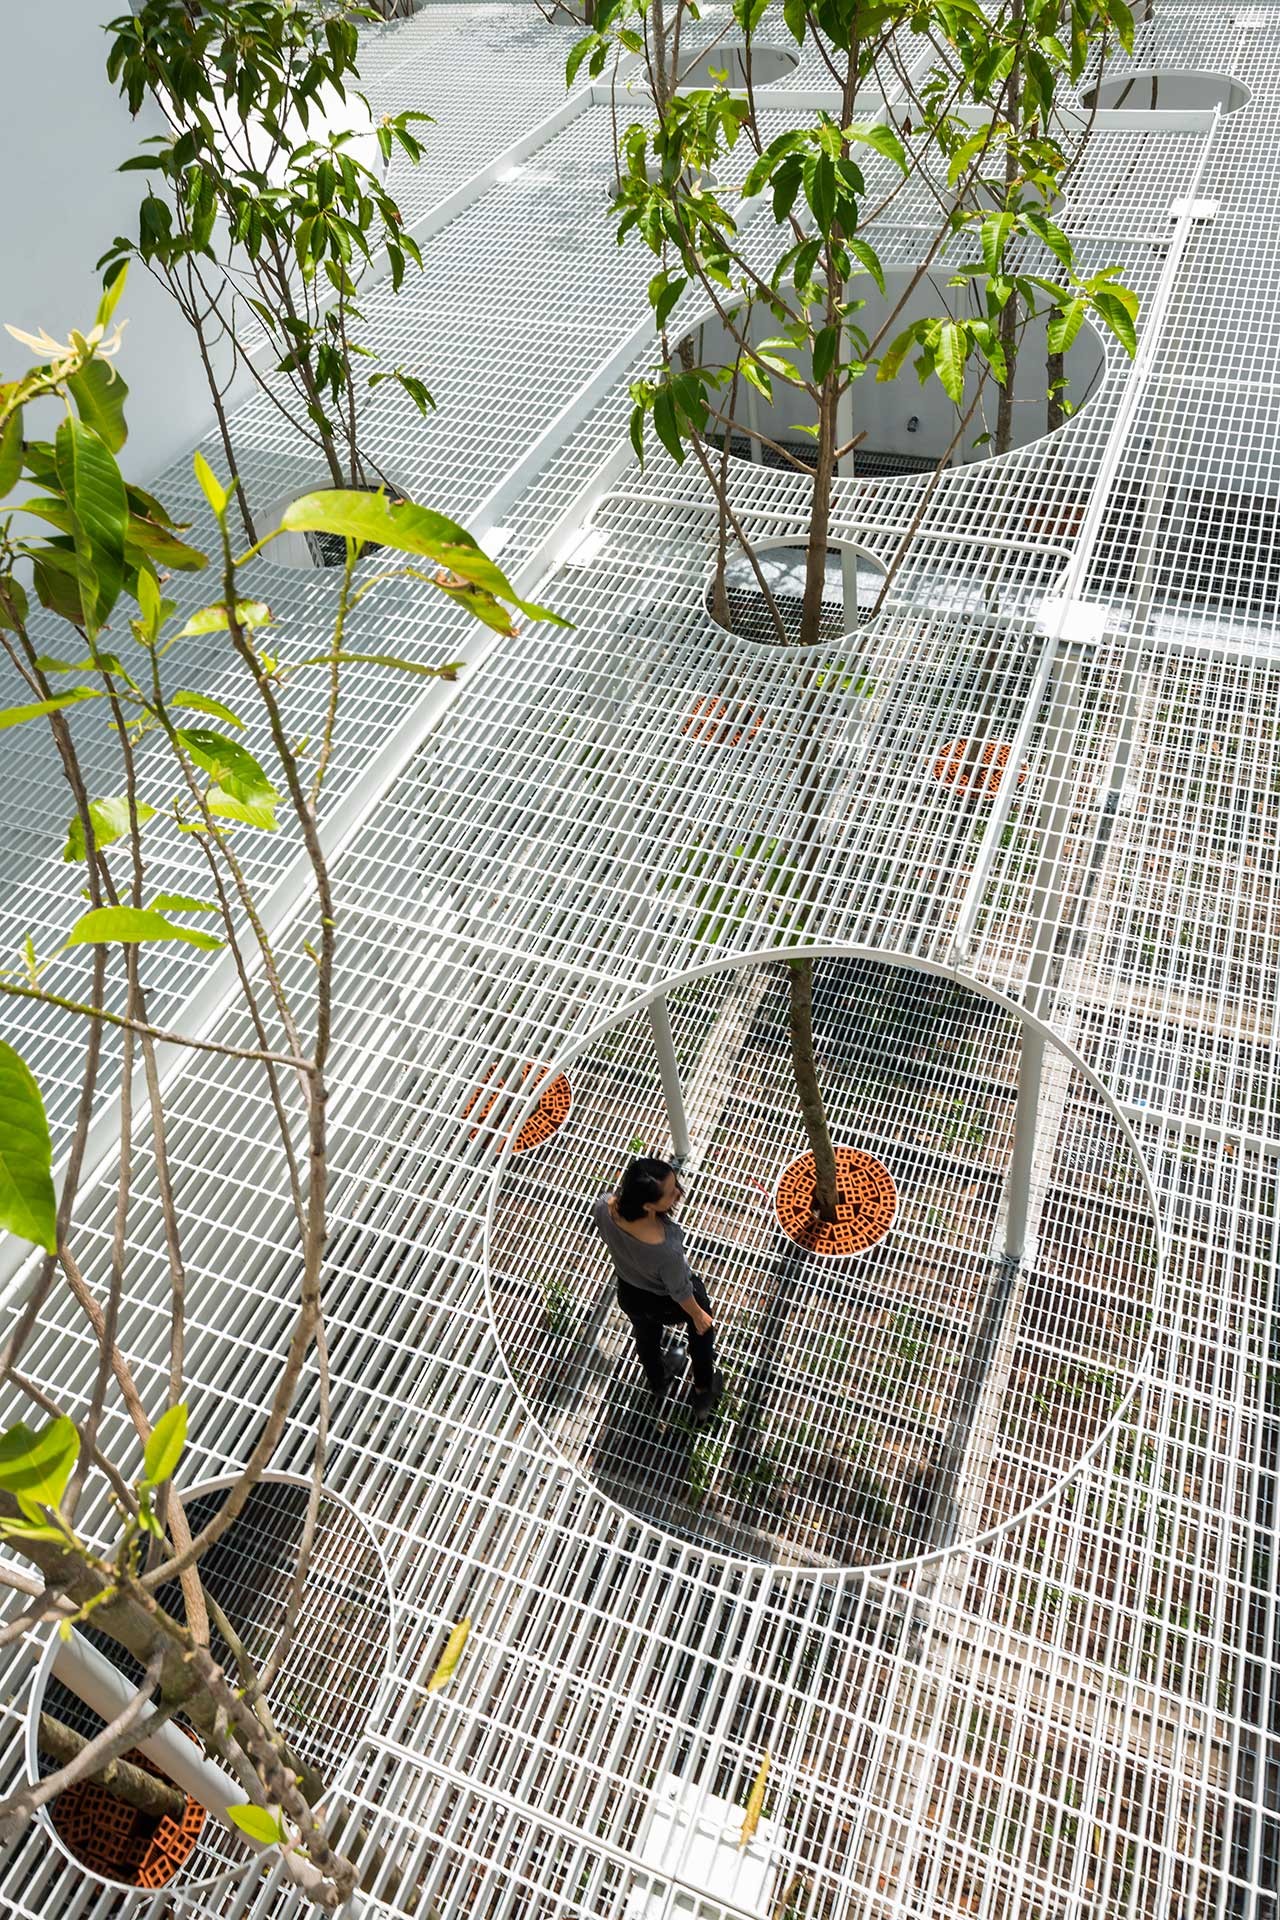 

Hệ thống lưới thép với các khoảng trống tạo điều kiện để cây xanh sinh trưởng
